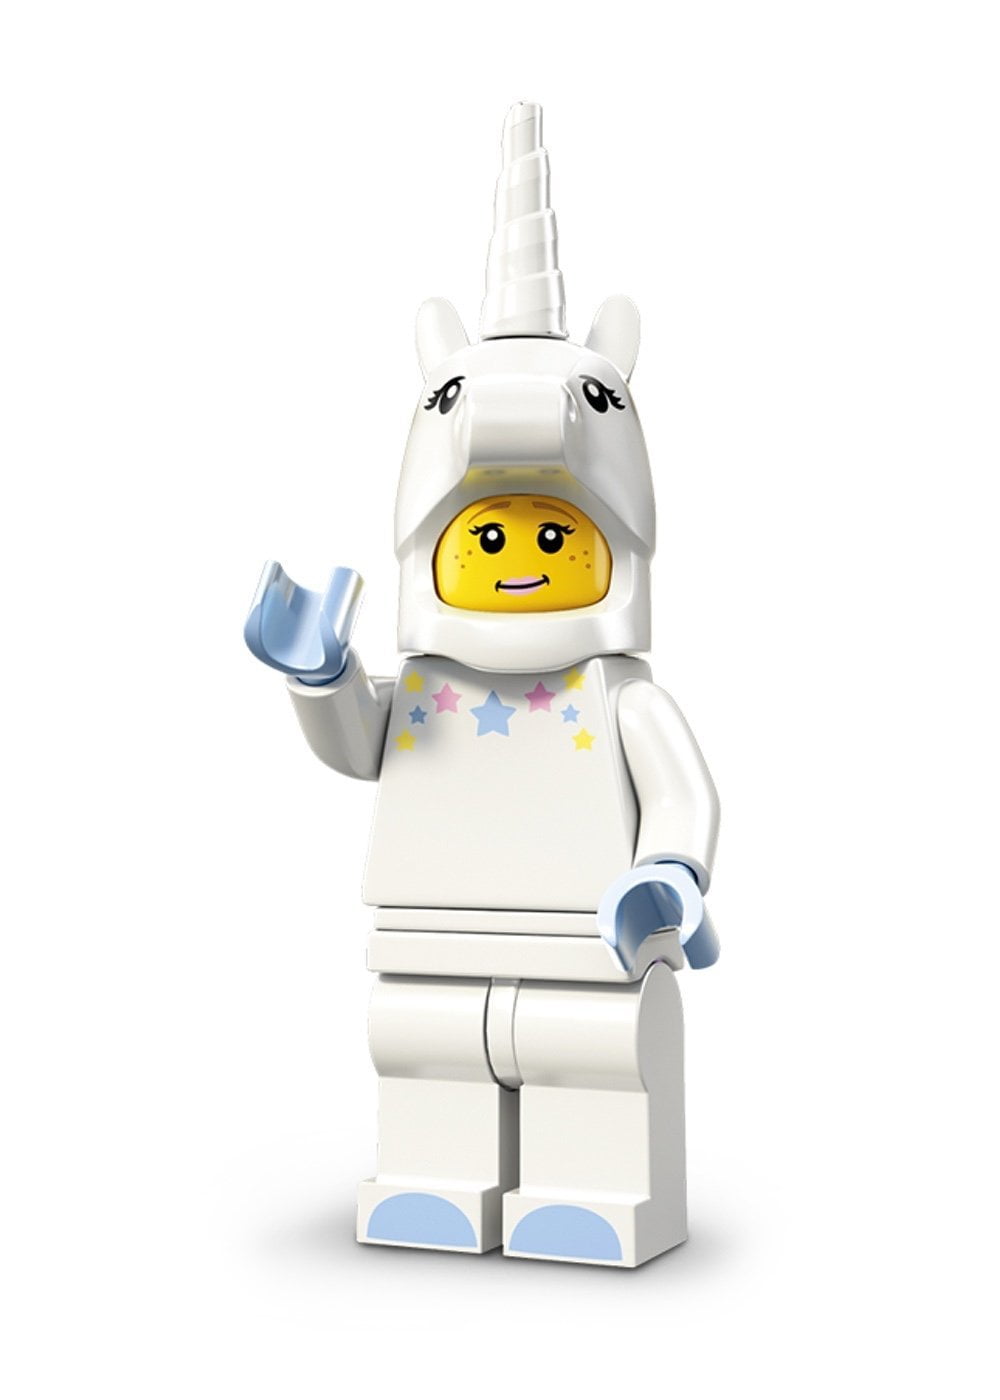 Unicorn Girl - LEGO Minifigures Series 13 13-03